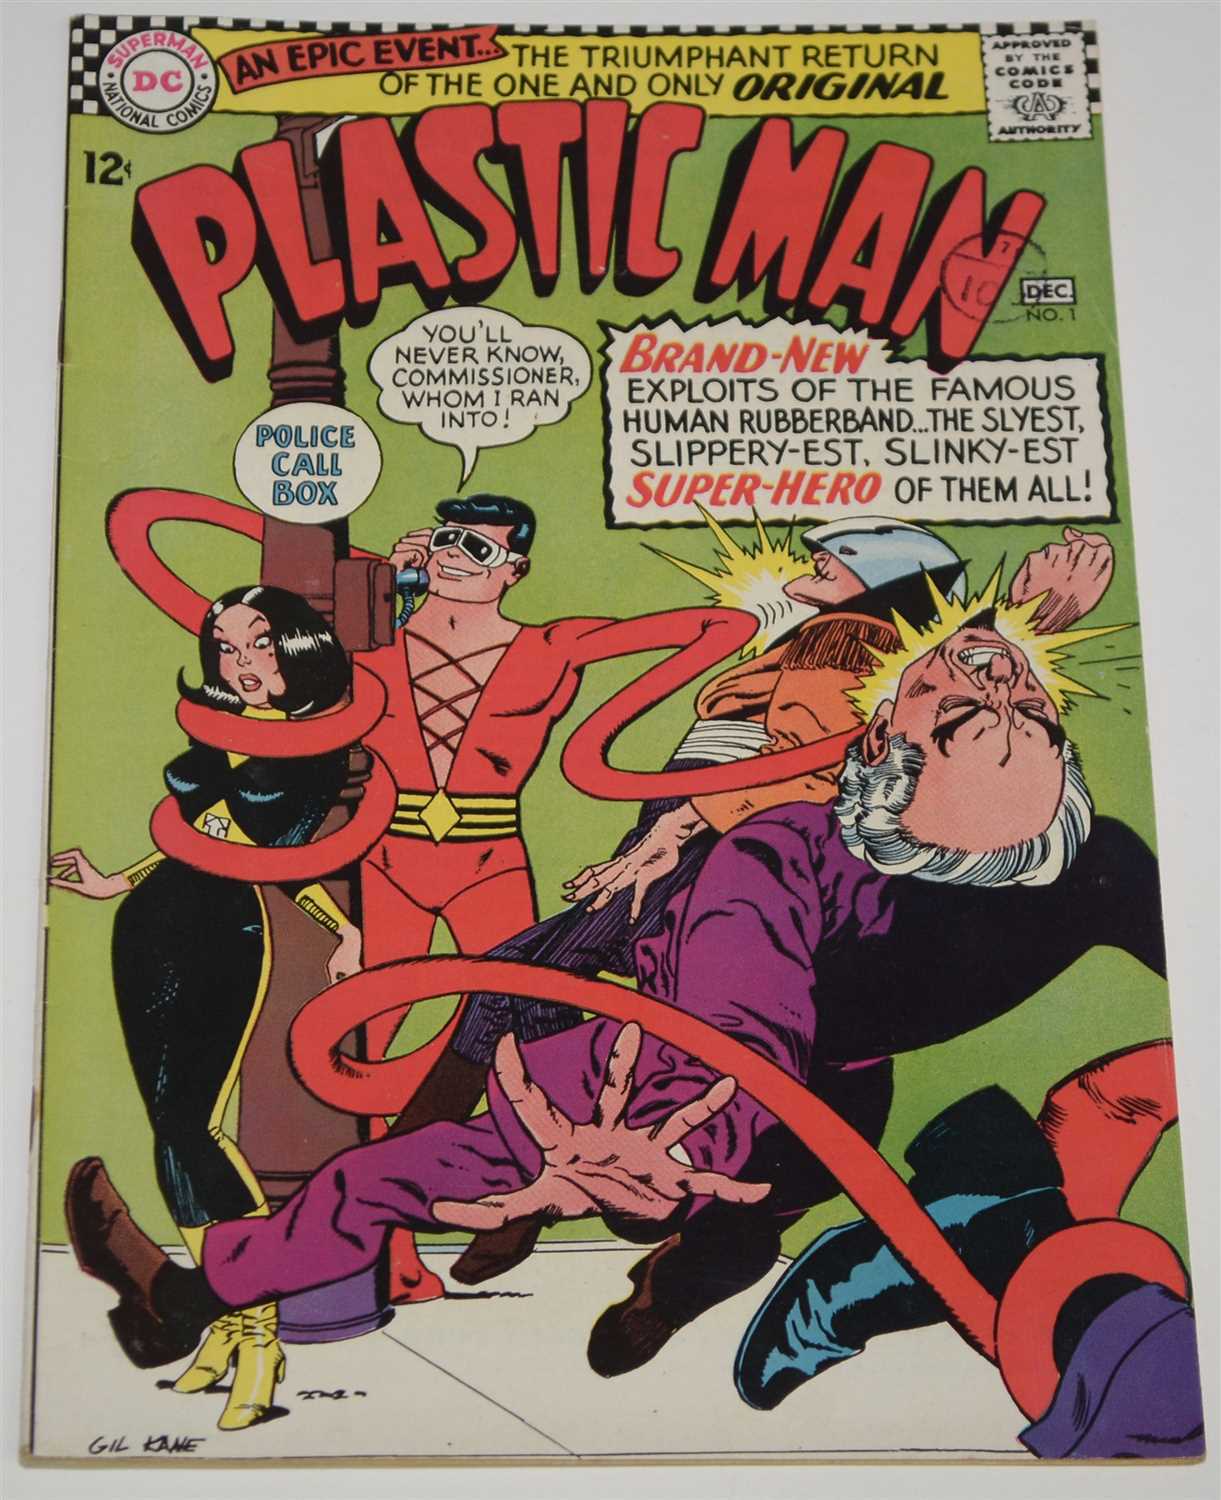 Lot 1460 - Plastic Man Comic